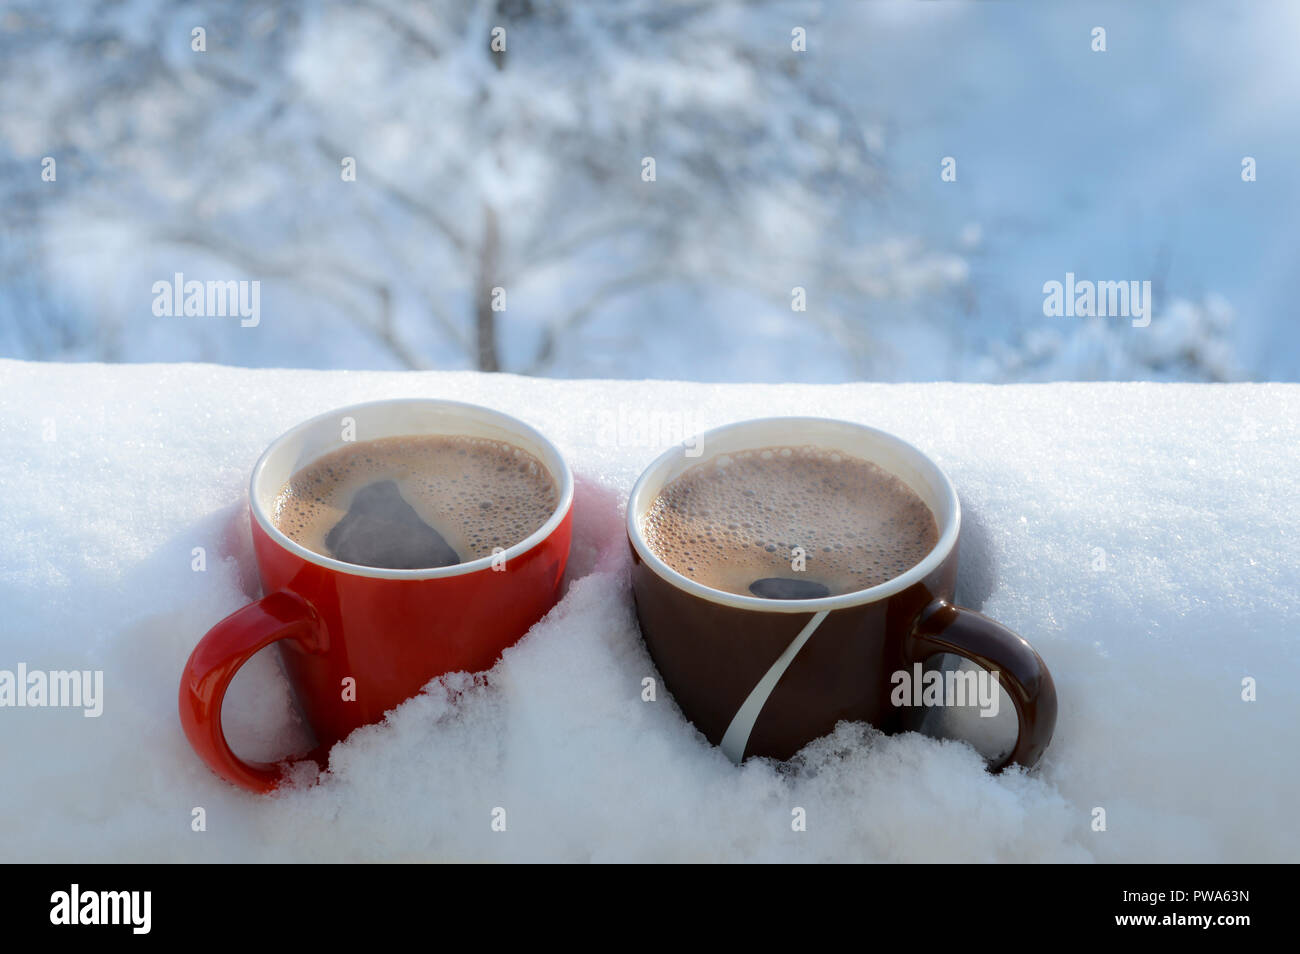 Romantisches Frühstück im Schnee. Winter Vintage Schlitten. Kaffee,  Marshmallows, und andere Süßigkeiten in einem Fach mit einer brennenden  Kerze Stockfotografie - Alamy